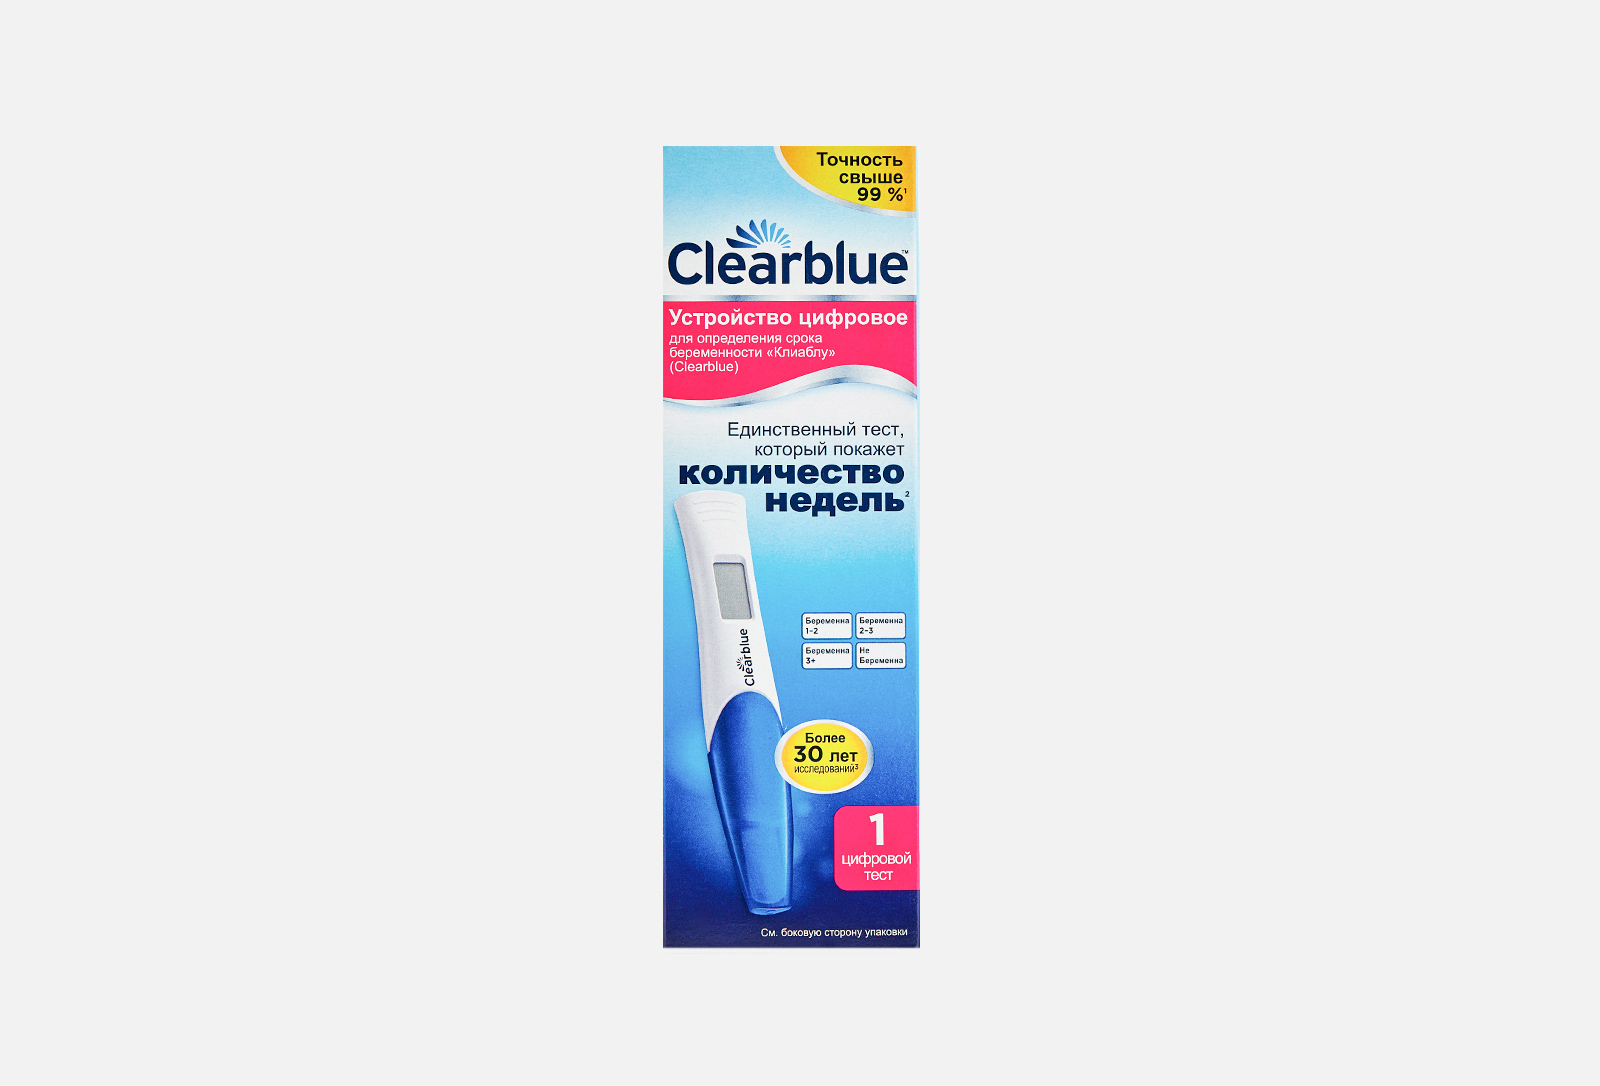 Clearblue digital для определения срока беременности. Clearblue устройство цифровое для определения срока беременности.